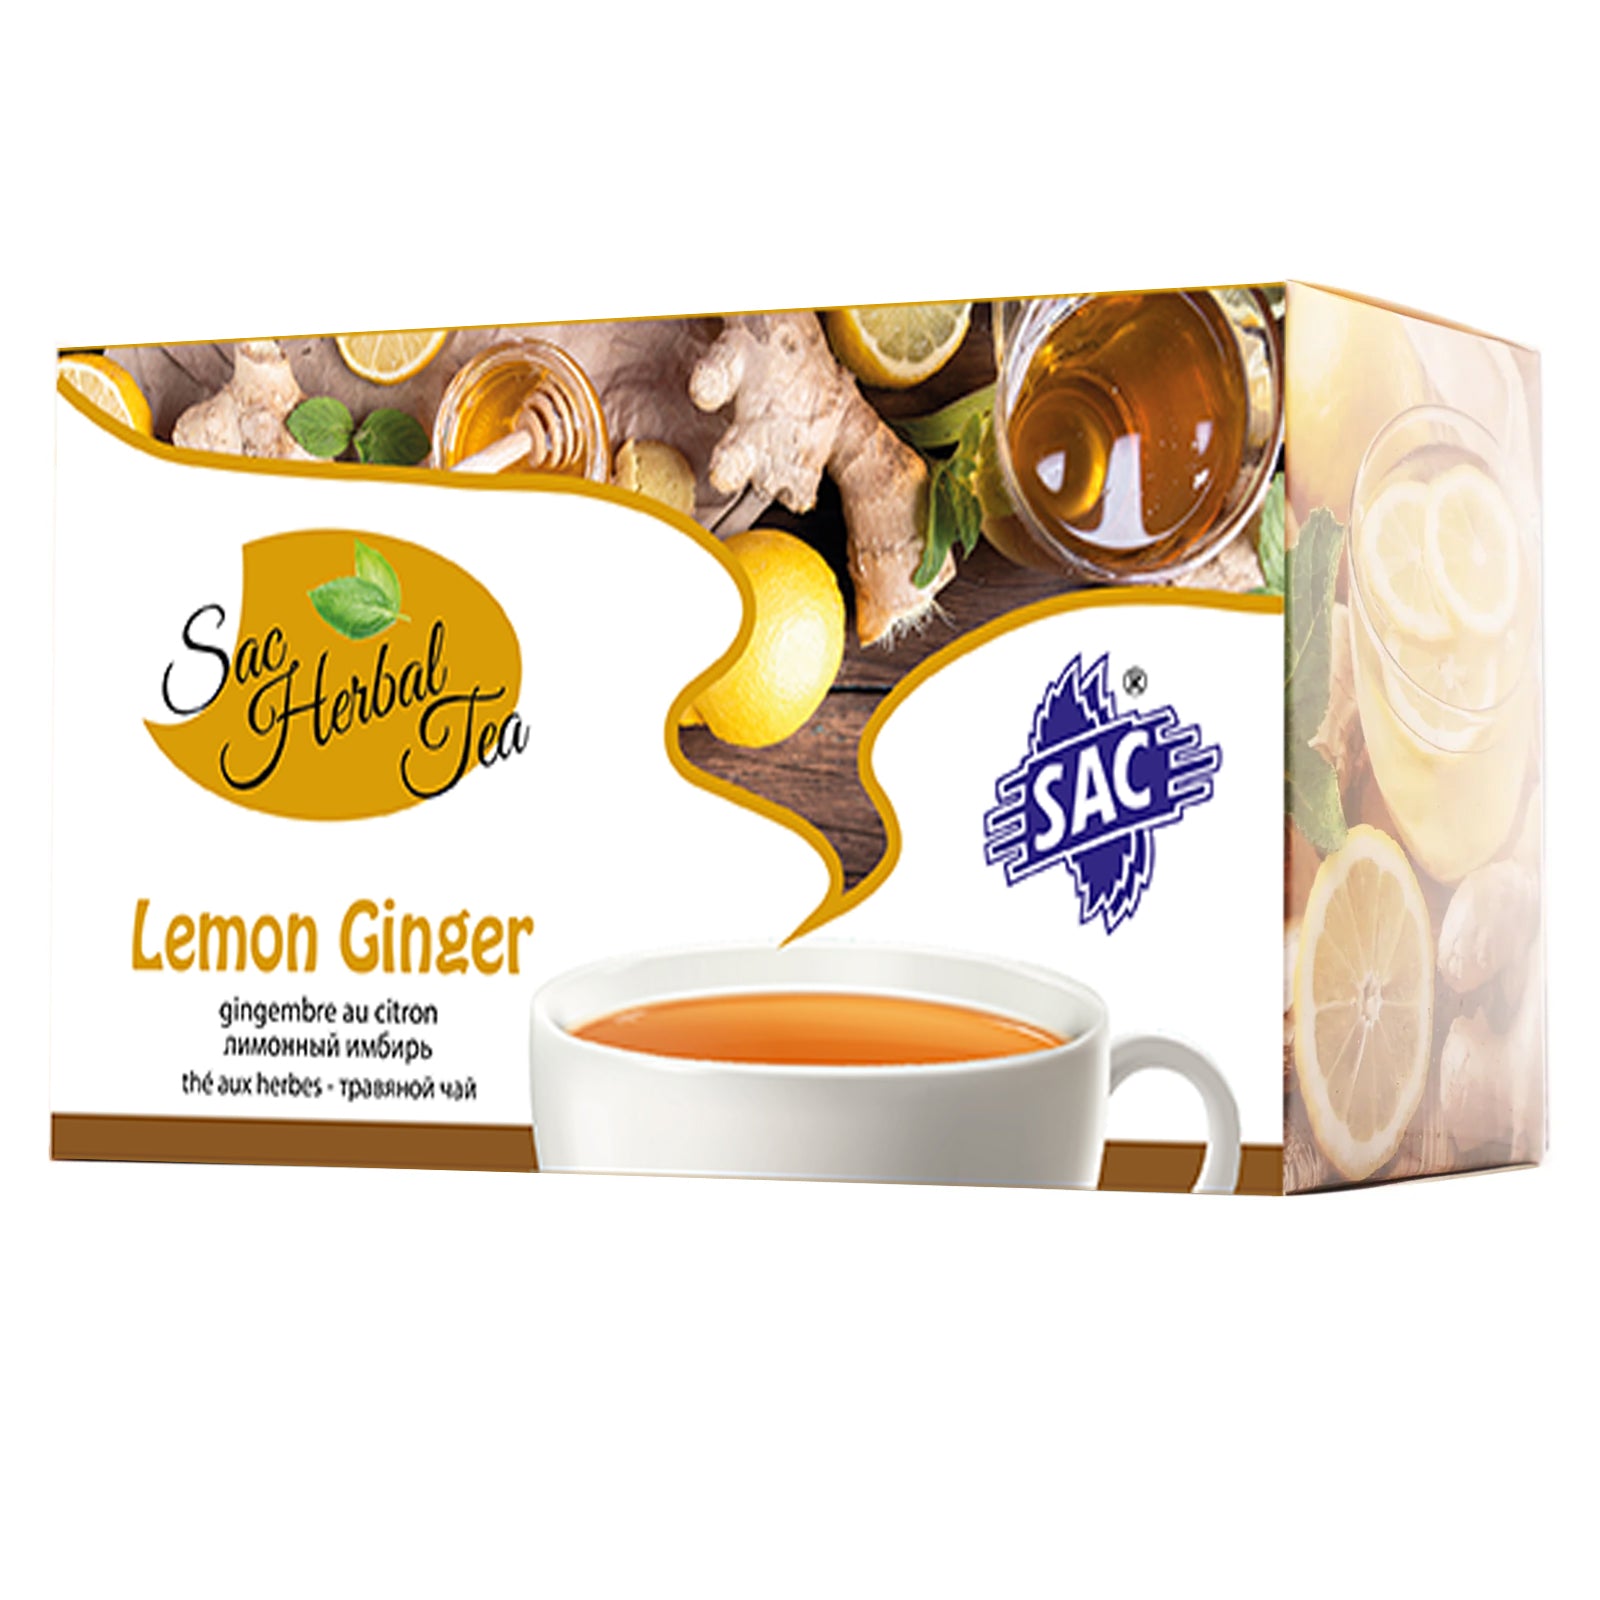 Lemon Ginger Herbal Green Tea (20 Sachets Per Pack)